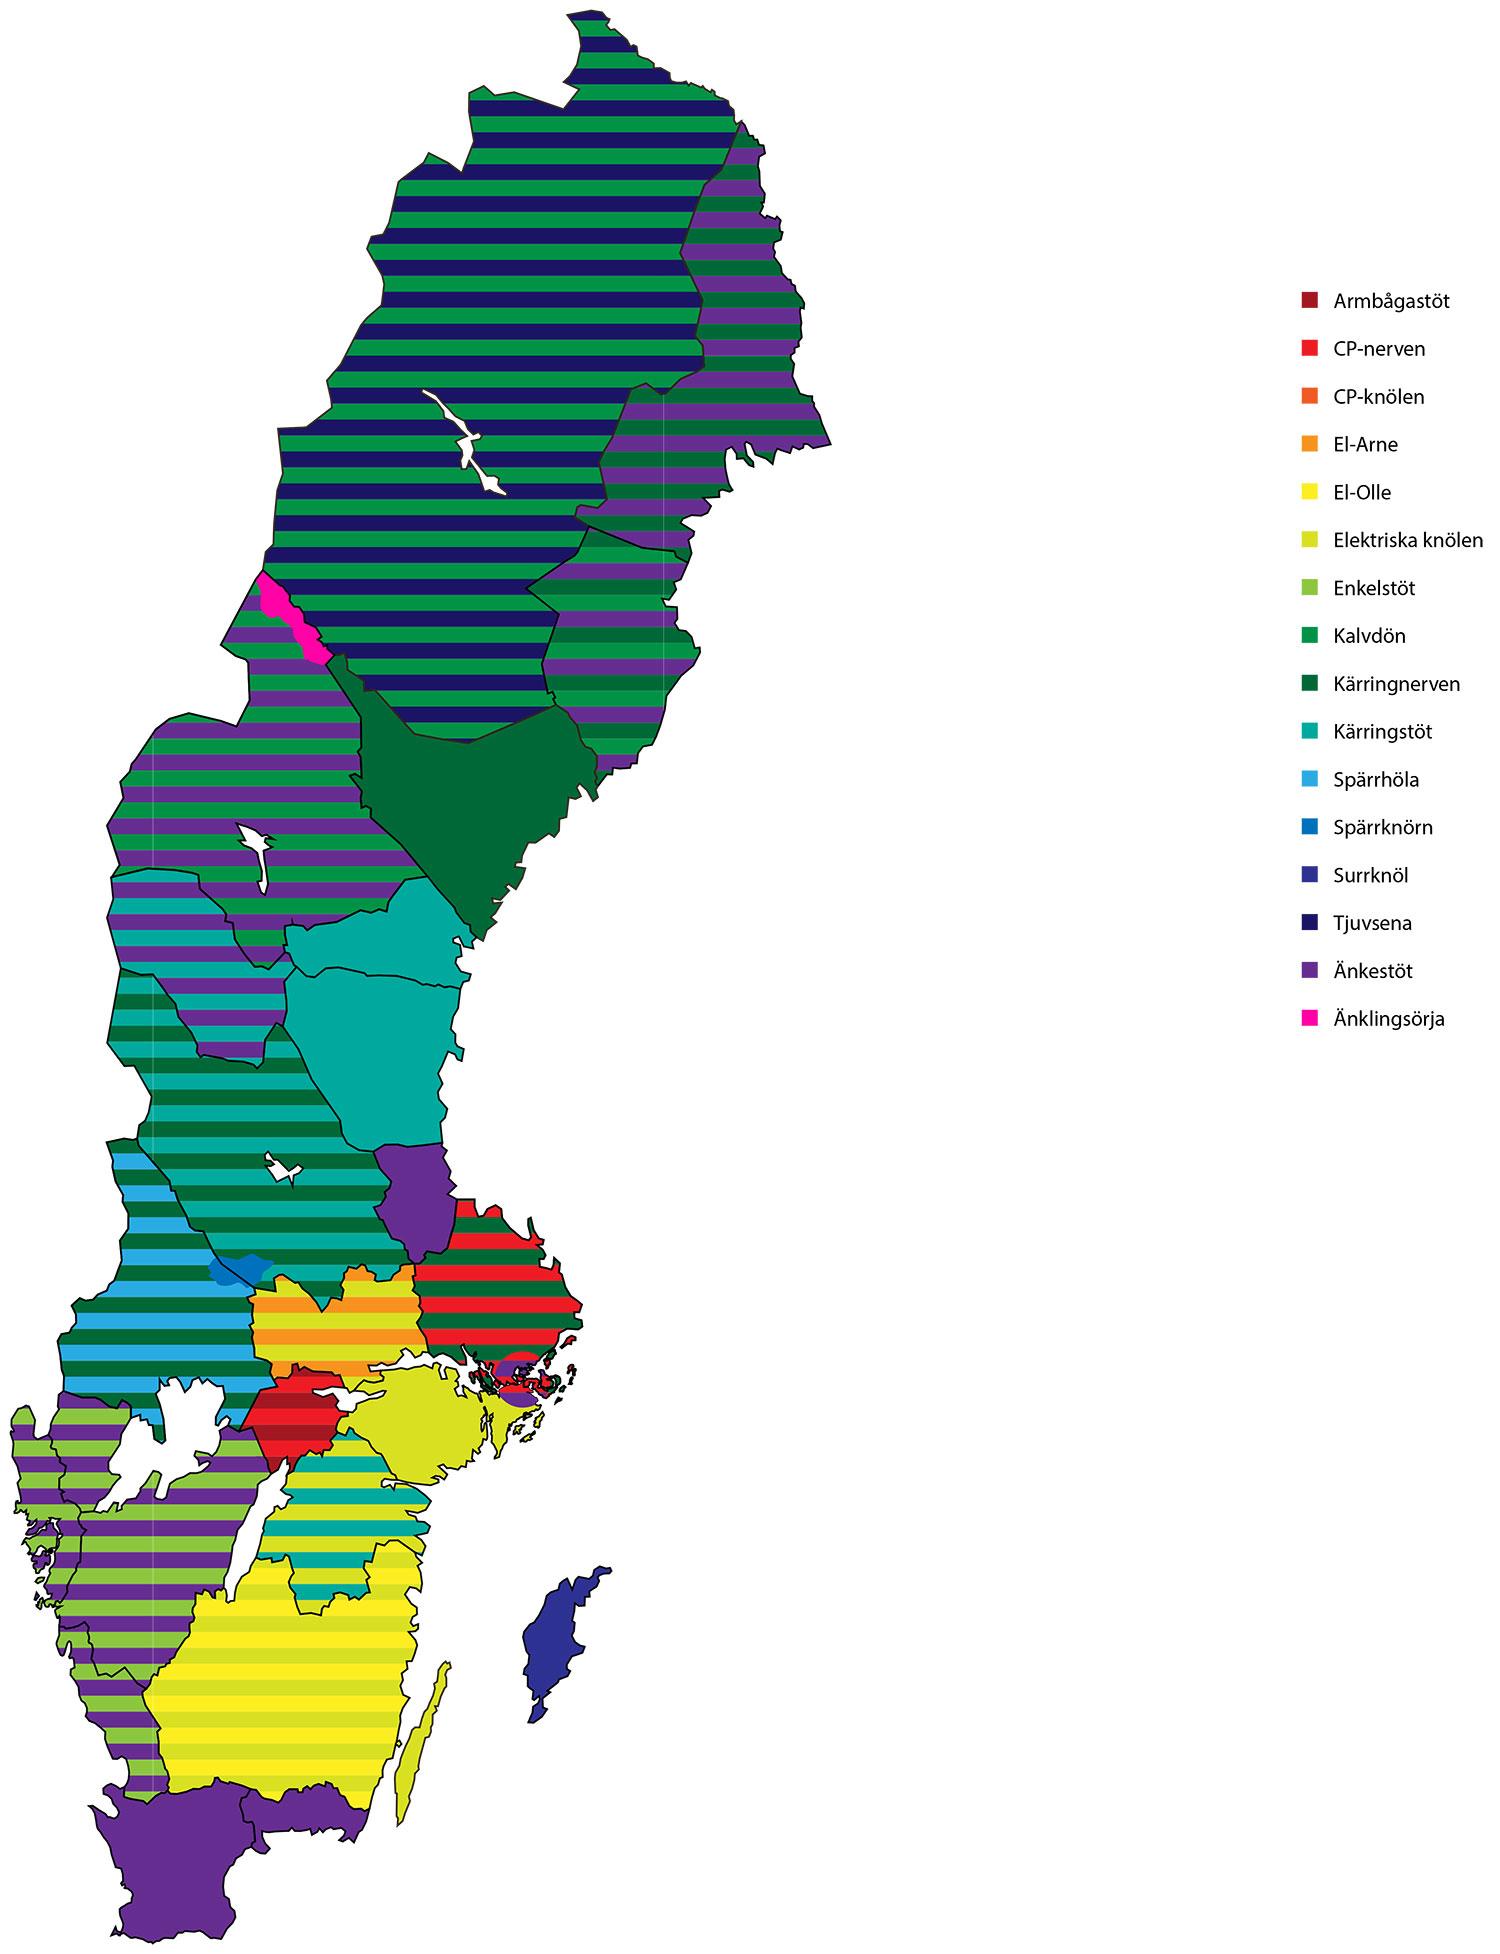 STÖTKARTAN Kartan är baserad på en mindre enkät utförd av Aftonbladets reporter samt de språkforskare som Aftonbladet talat med.